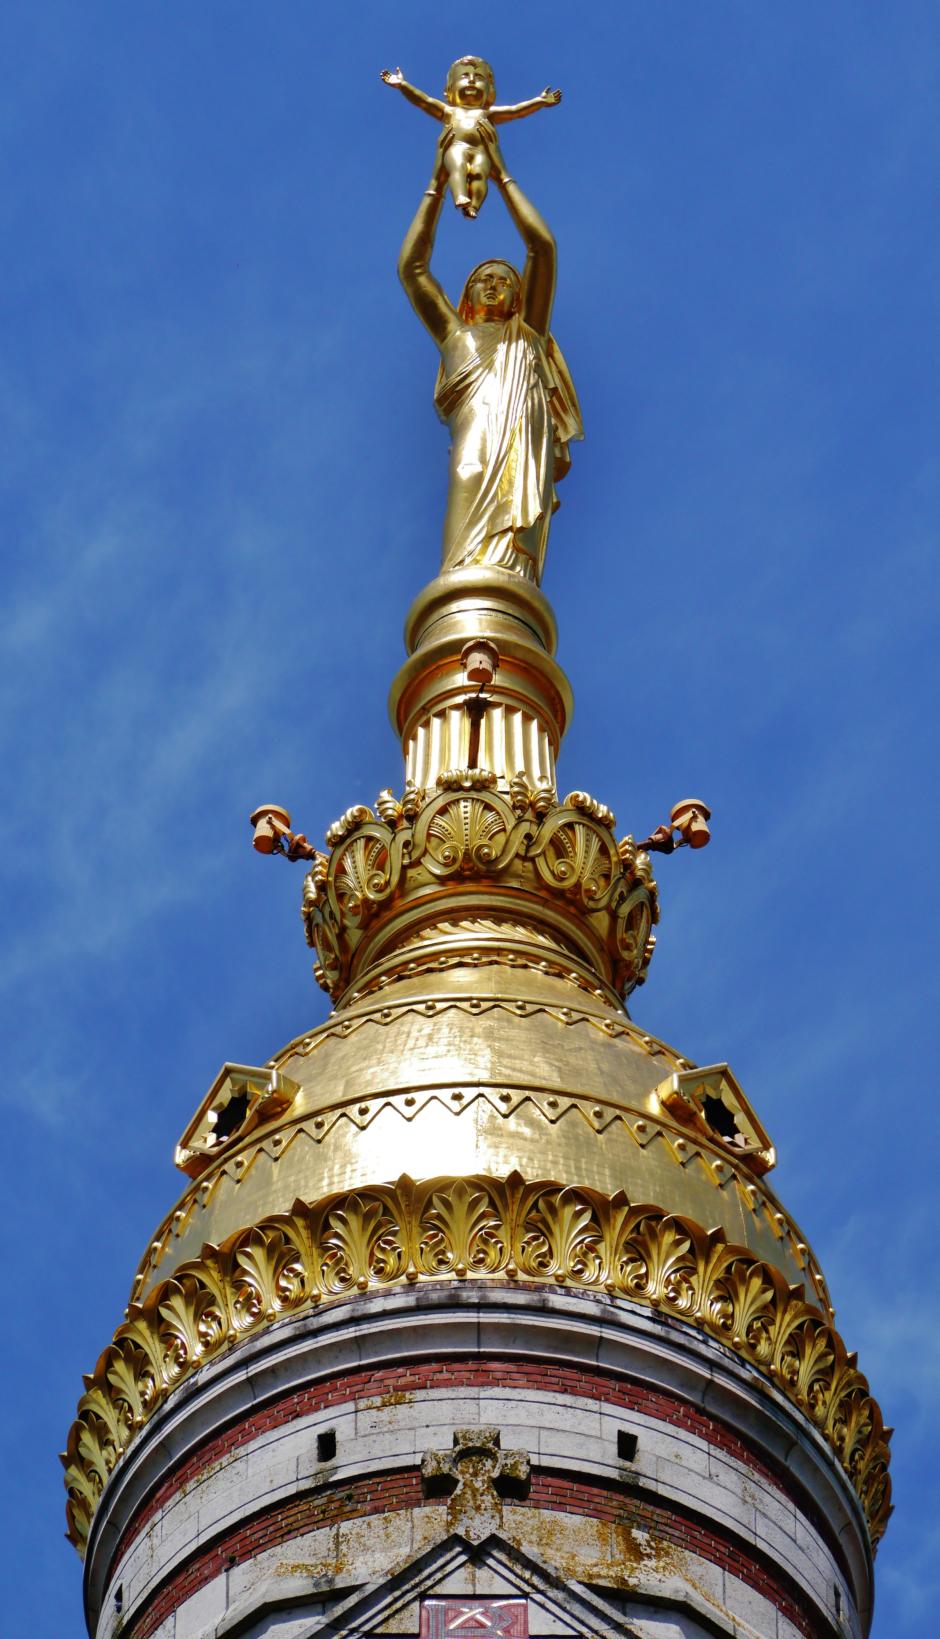 La Virgen de Oro Basílica Notre-Dame de Brebières